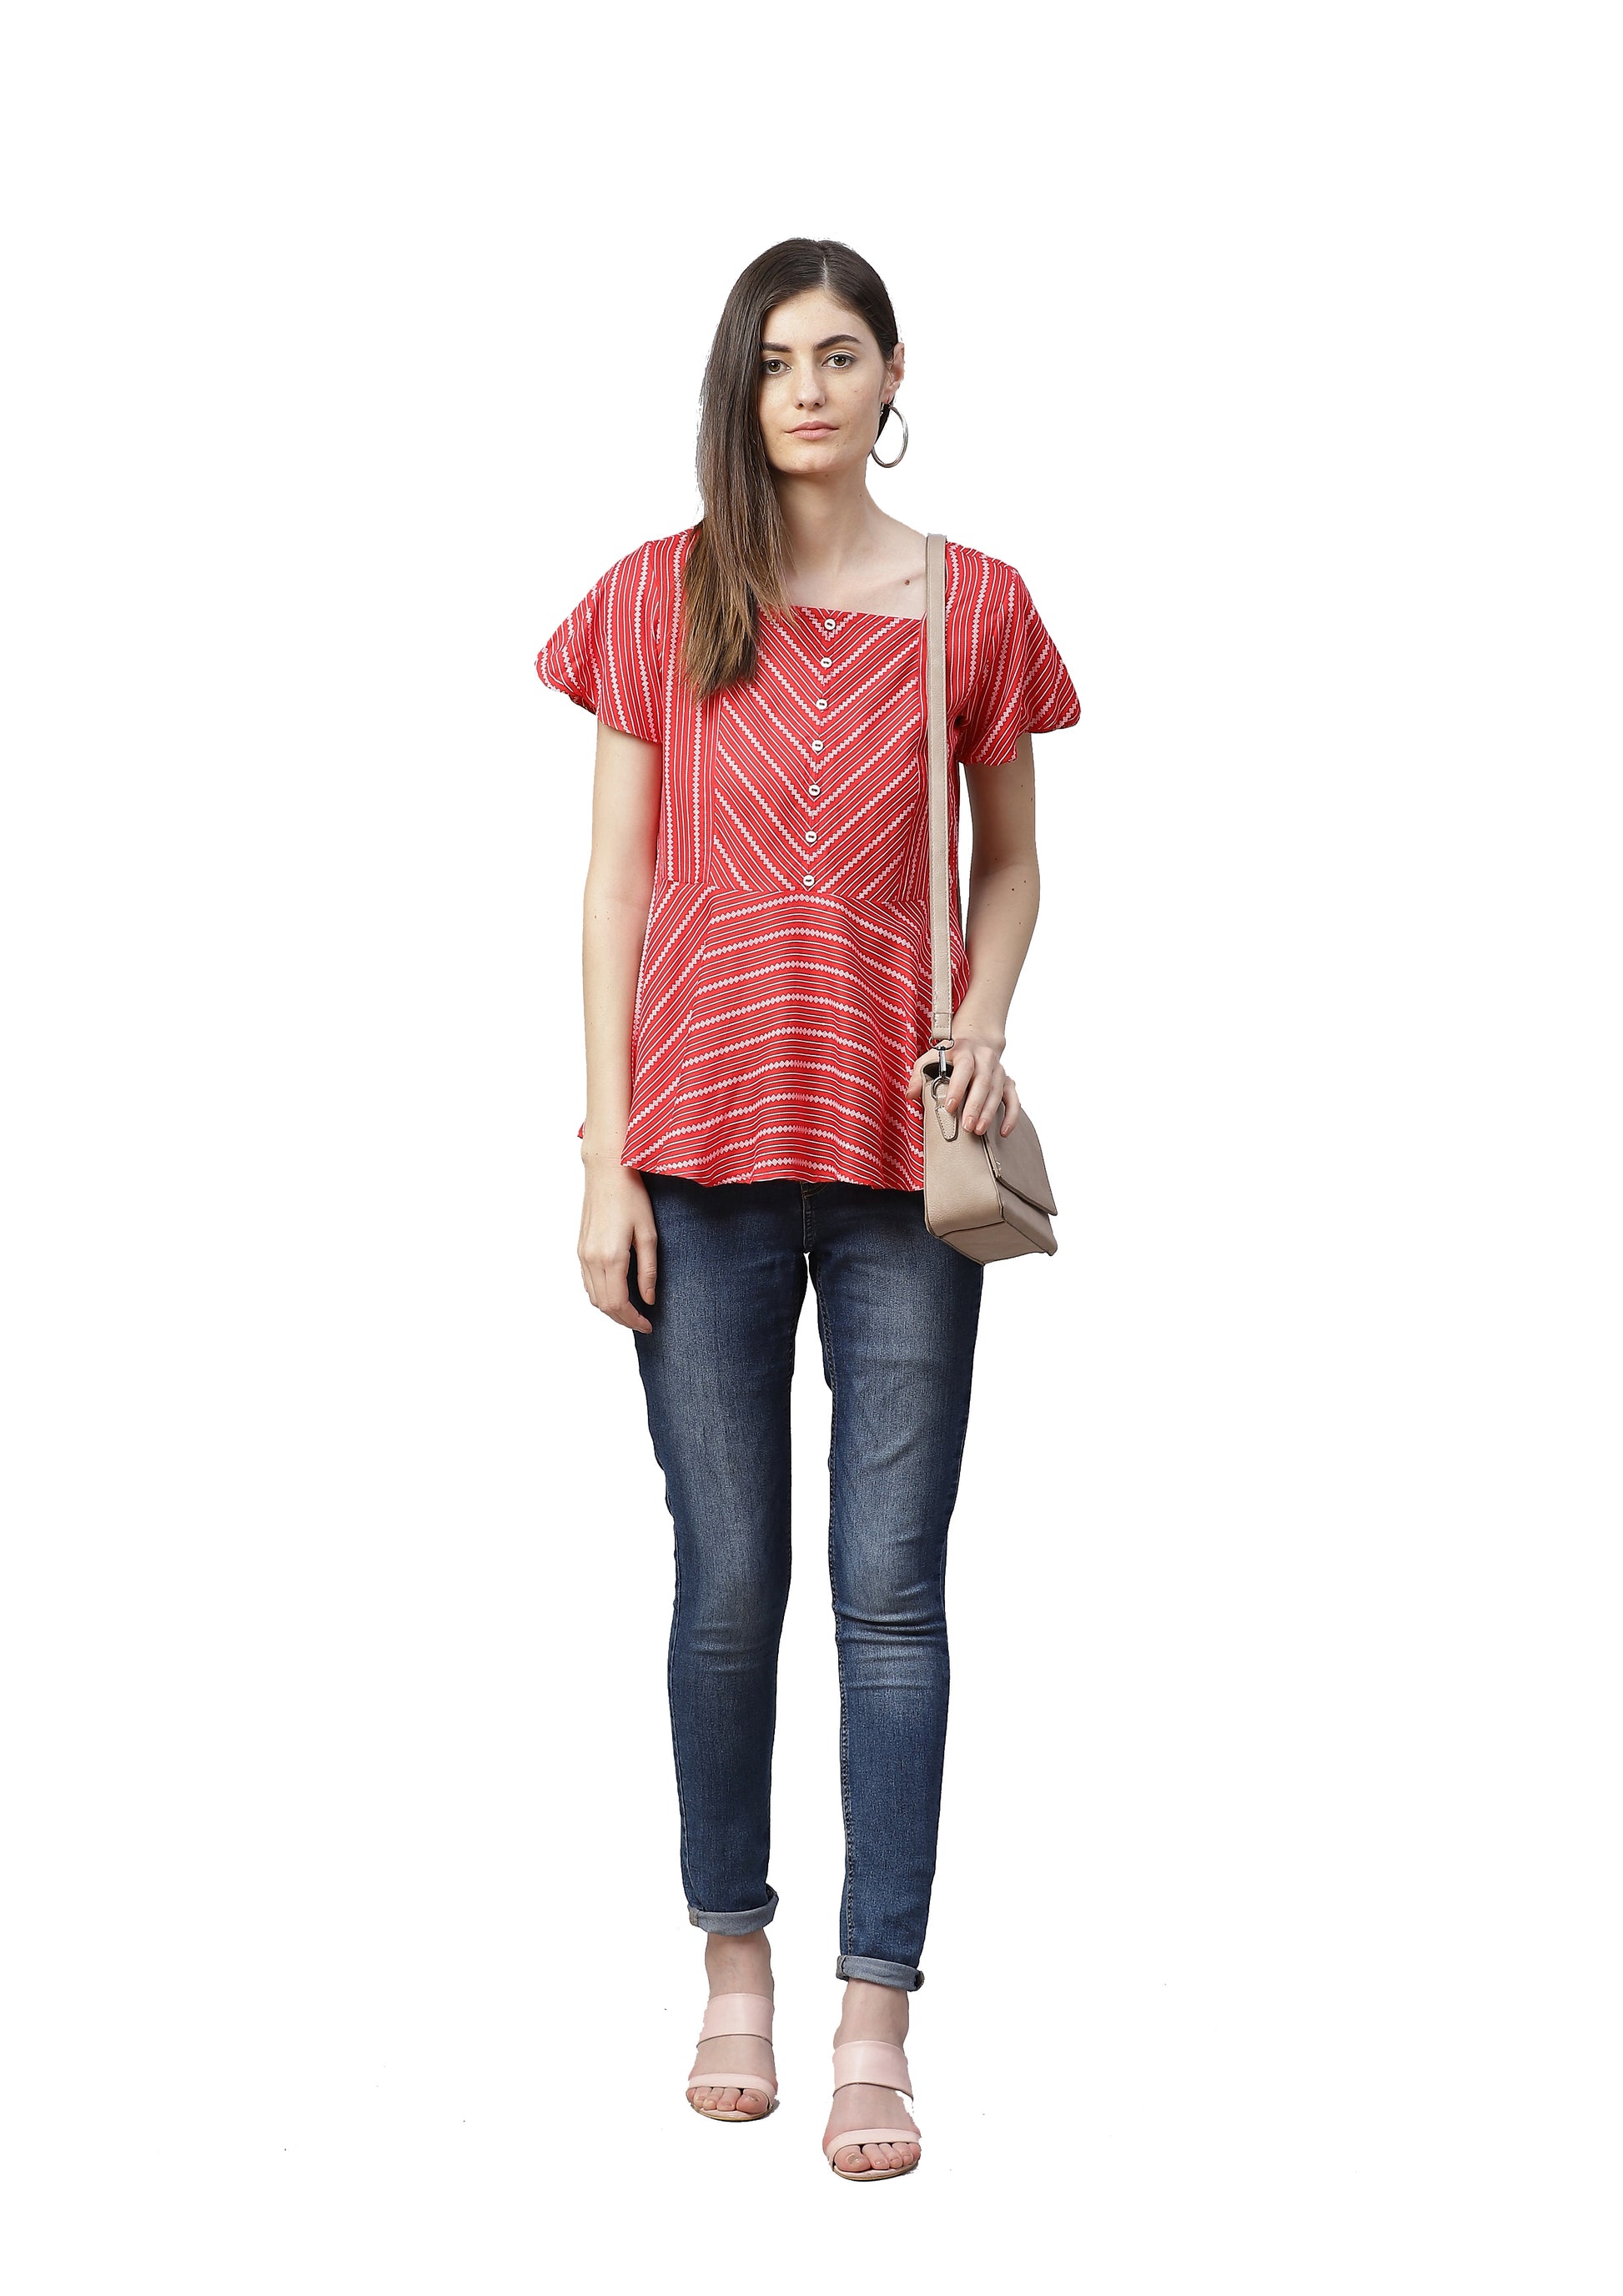 women rayon stripe printed regular top red